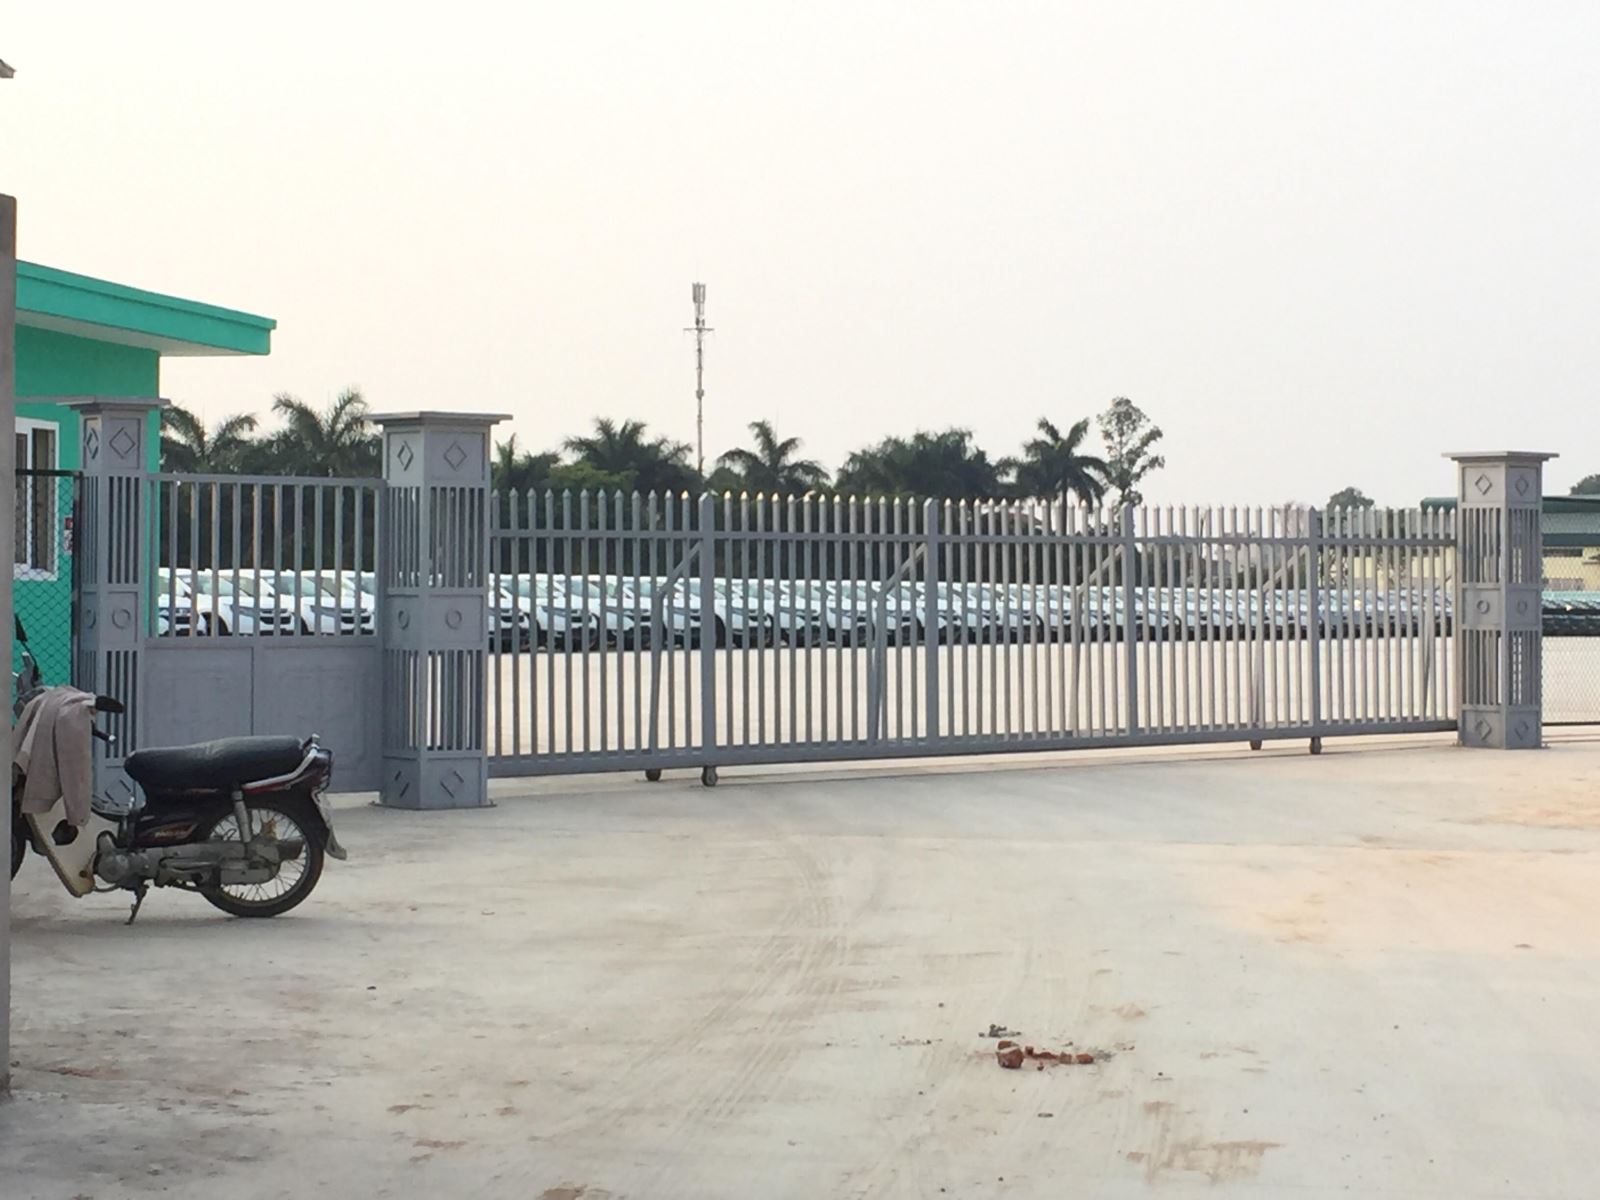 Hà Nội: Bãi xe không phép 'ung dung’ hoạt động trên đất dự án